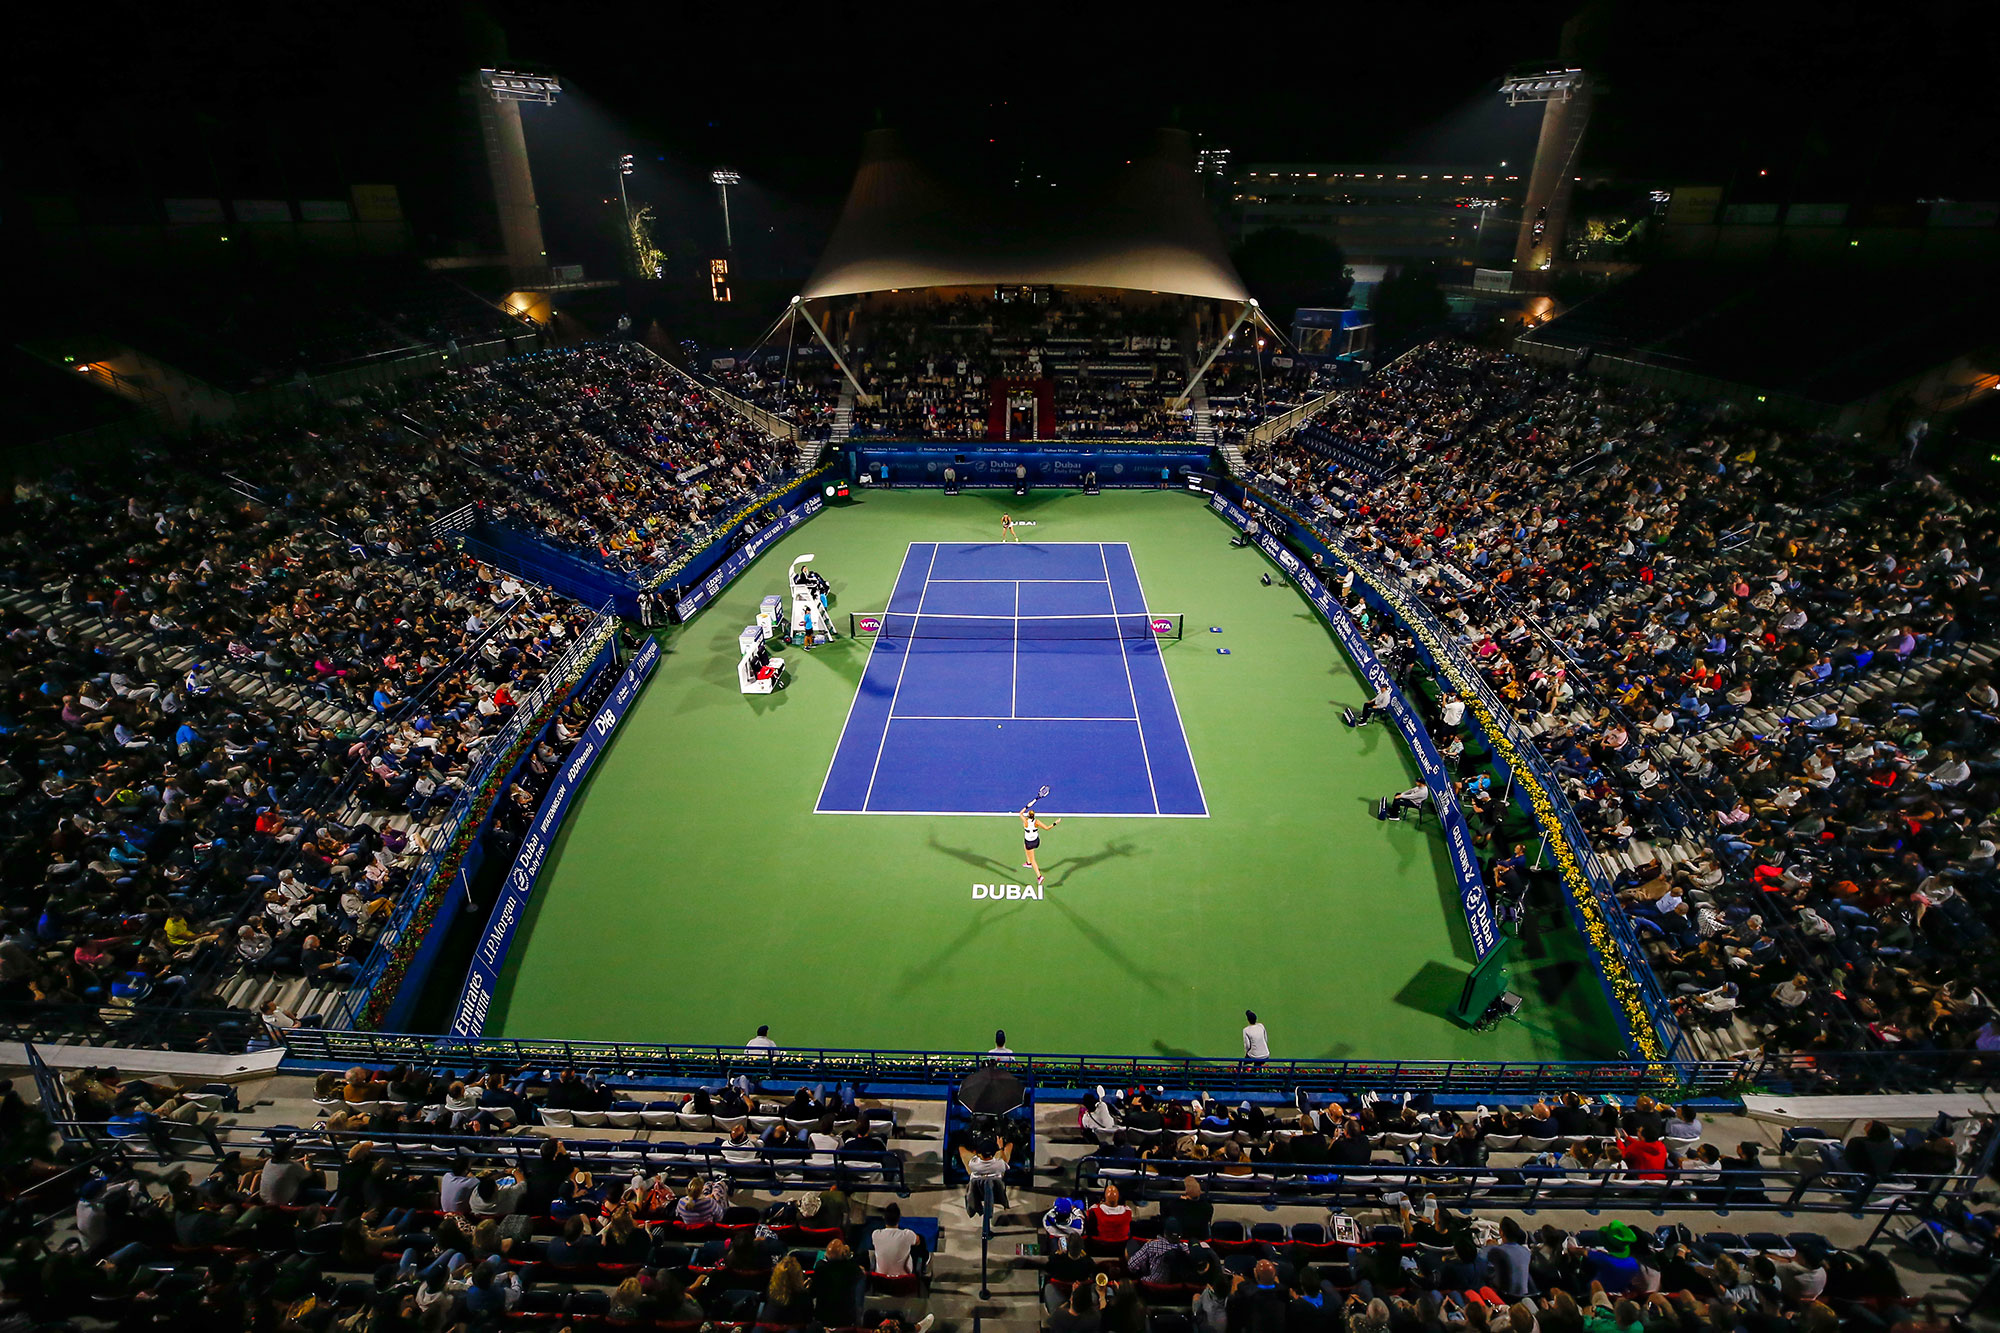 10 Things To Watch In Dubai Dubai Duty Free Tennis Championships